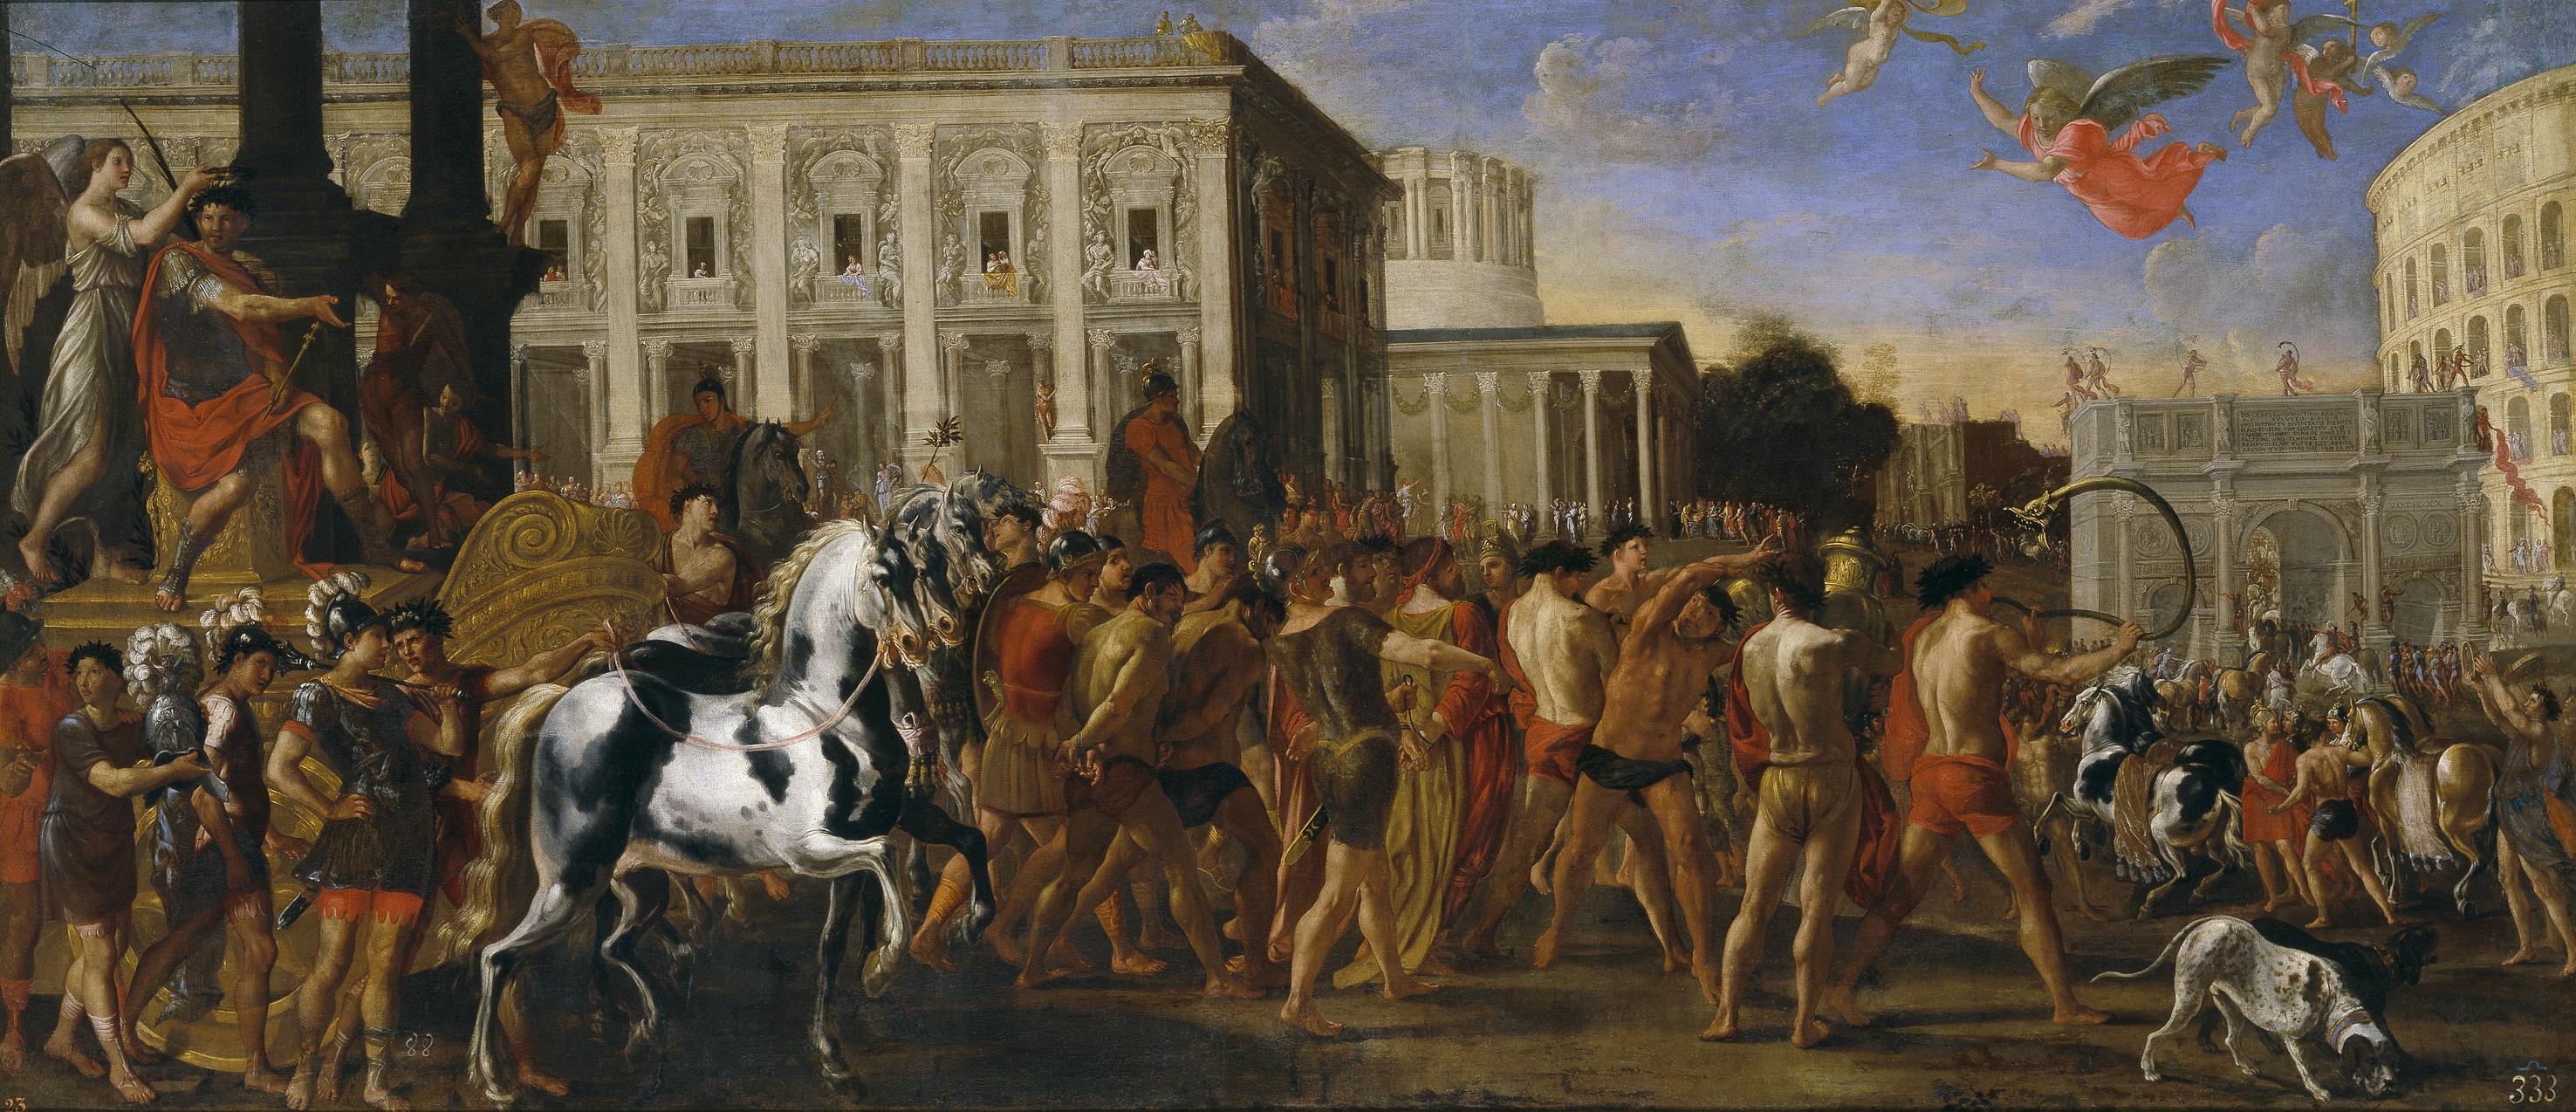 Viviano Codazzi and Domenico Gargiulo - Triumphal Entry of Constantine in Rome